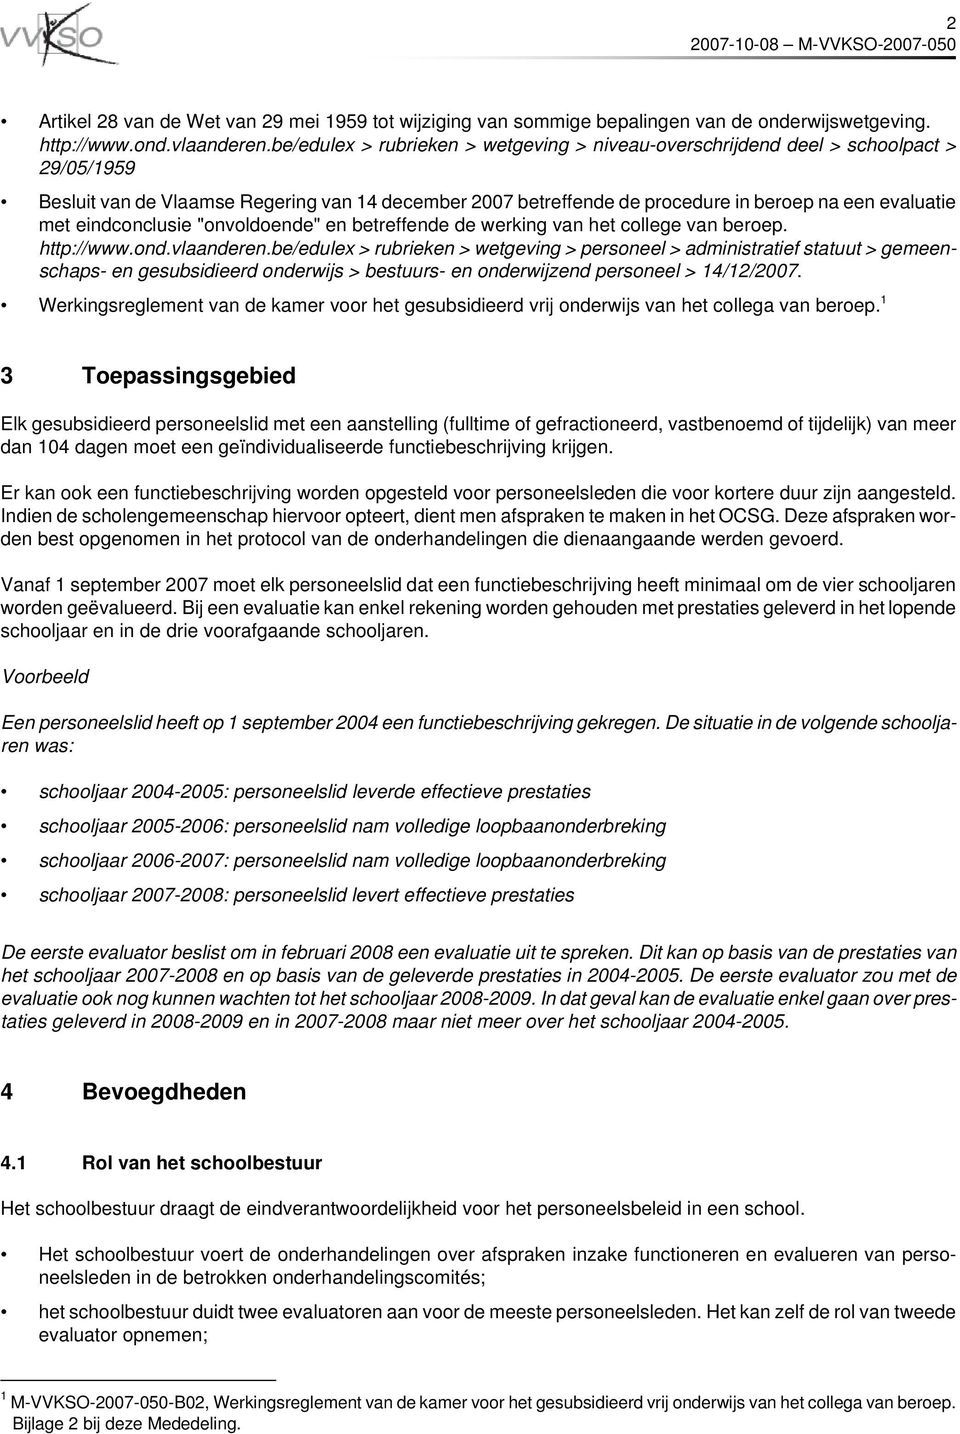 eindconclusie "onvoldoende" en betreffende de werking van het college van beroep. http://www.ond.vlaanderen.